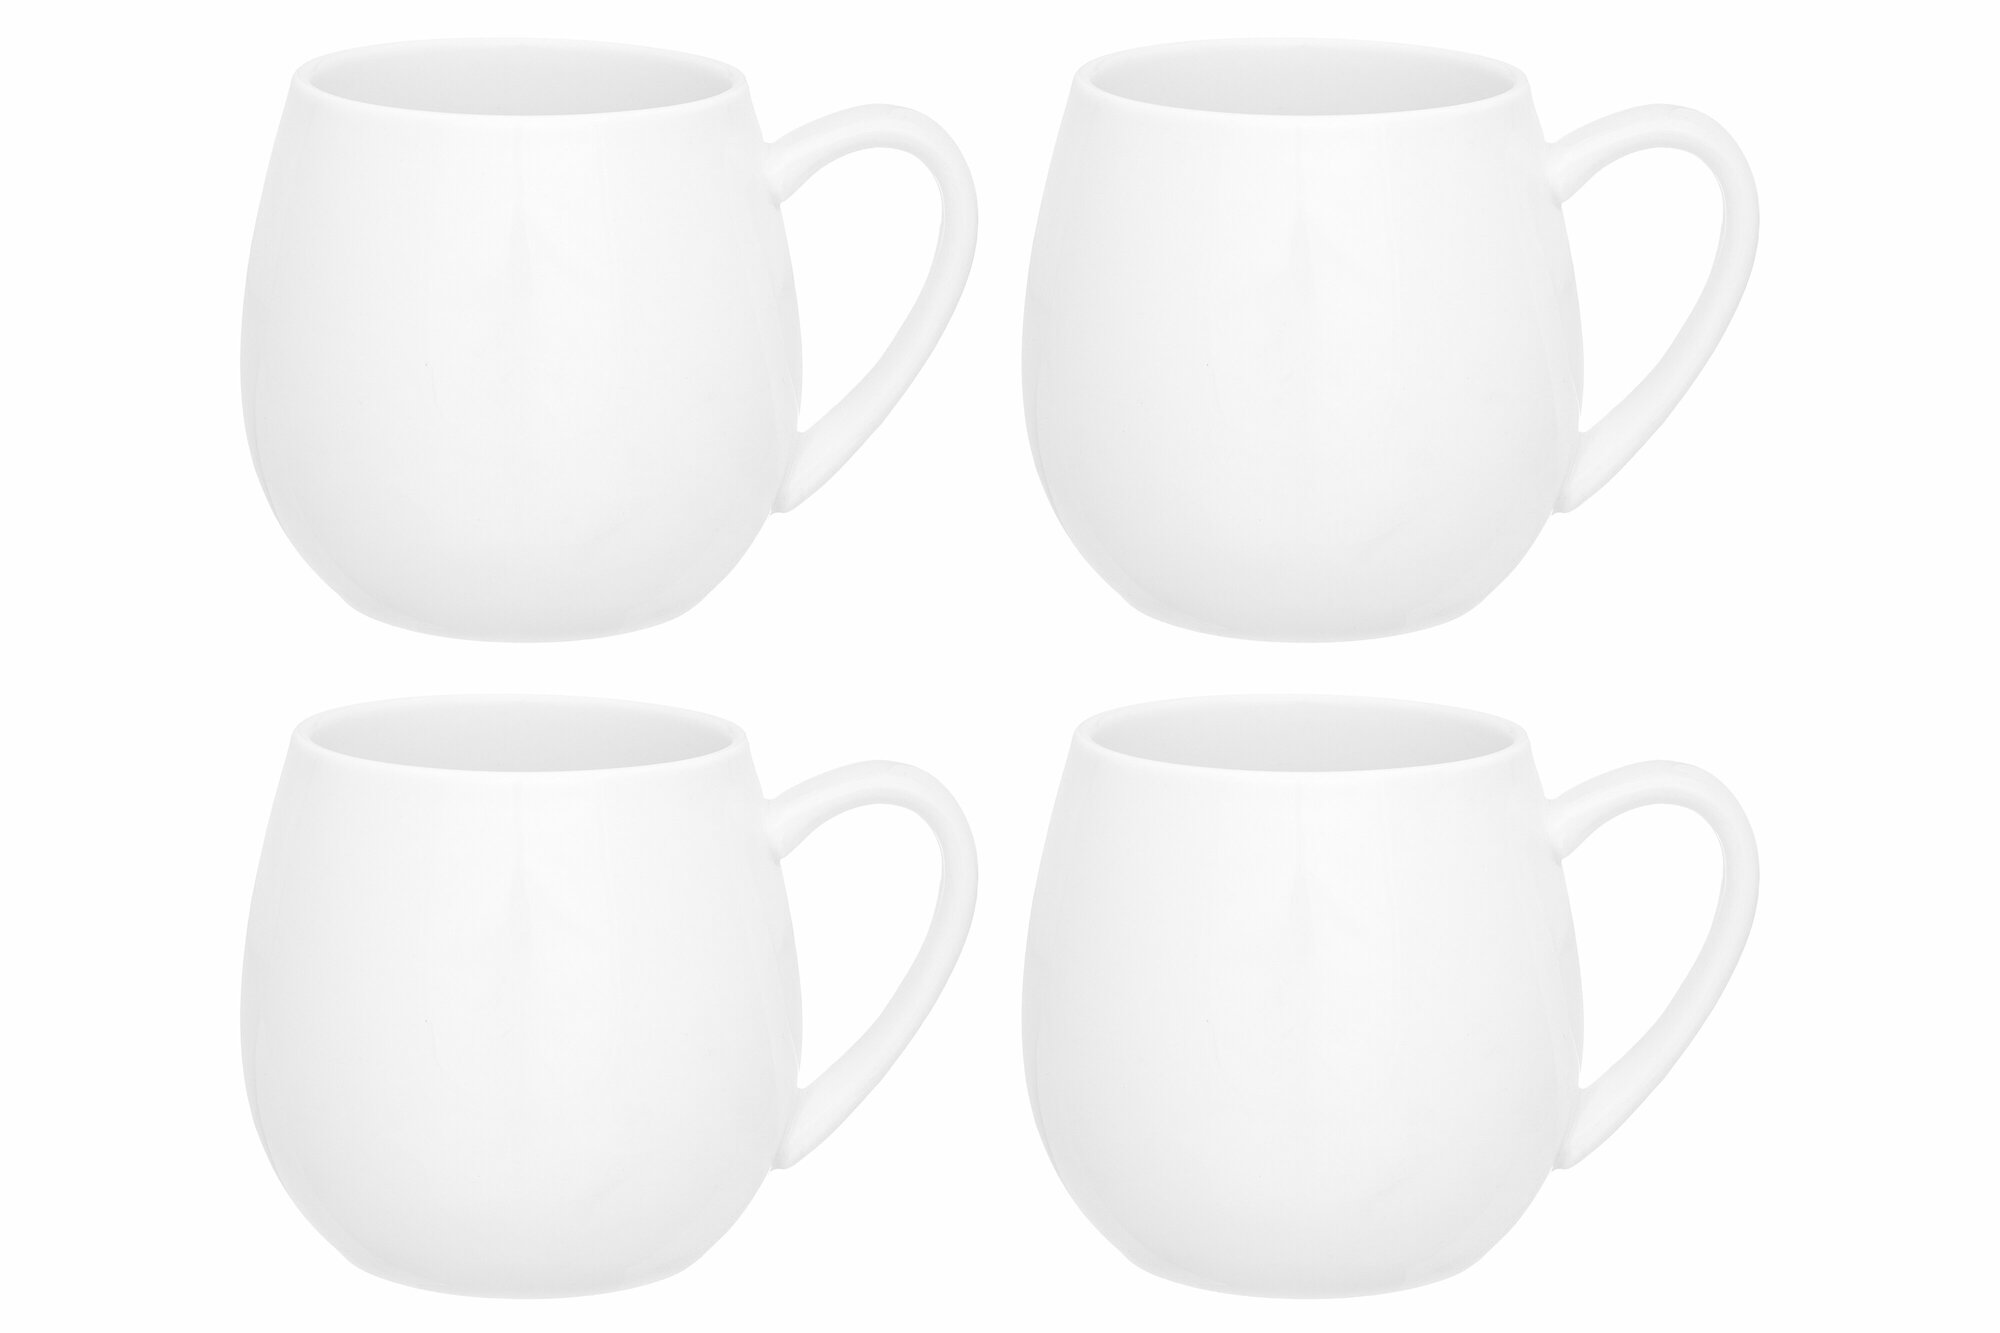 Кружка / чашка / для чая, кофе, капучино 4 шт 400 мл Elan Gallery "Белые ночи" бочонок + крышка-подставка, набор